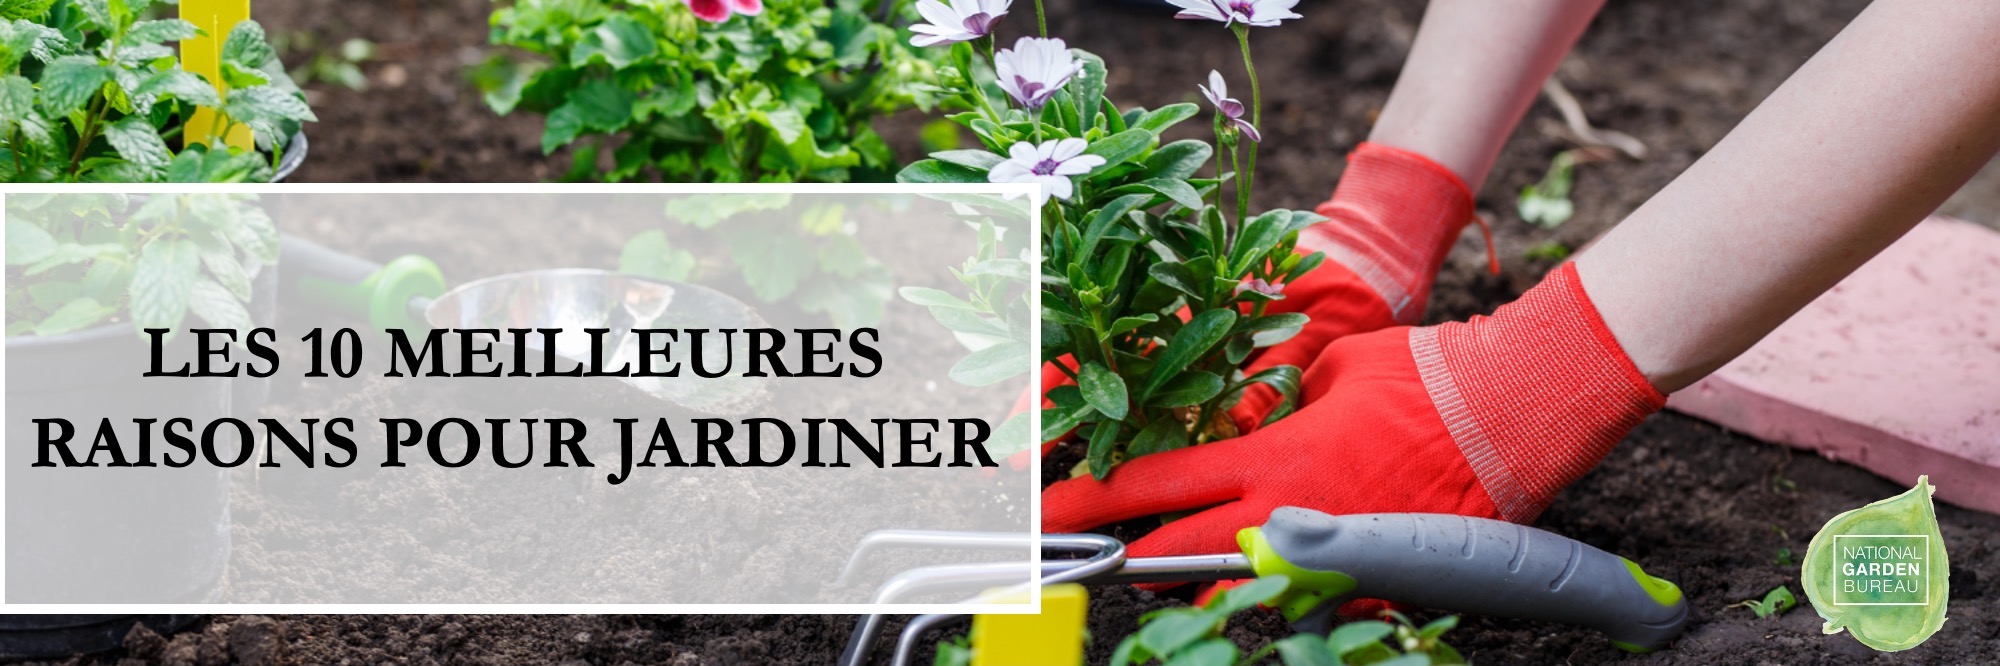 Les 10 meilleures raisons pour jardiner